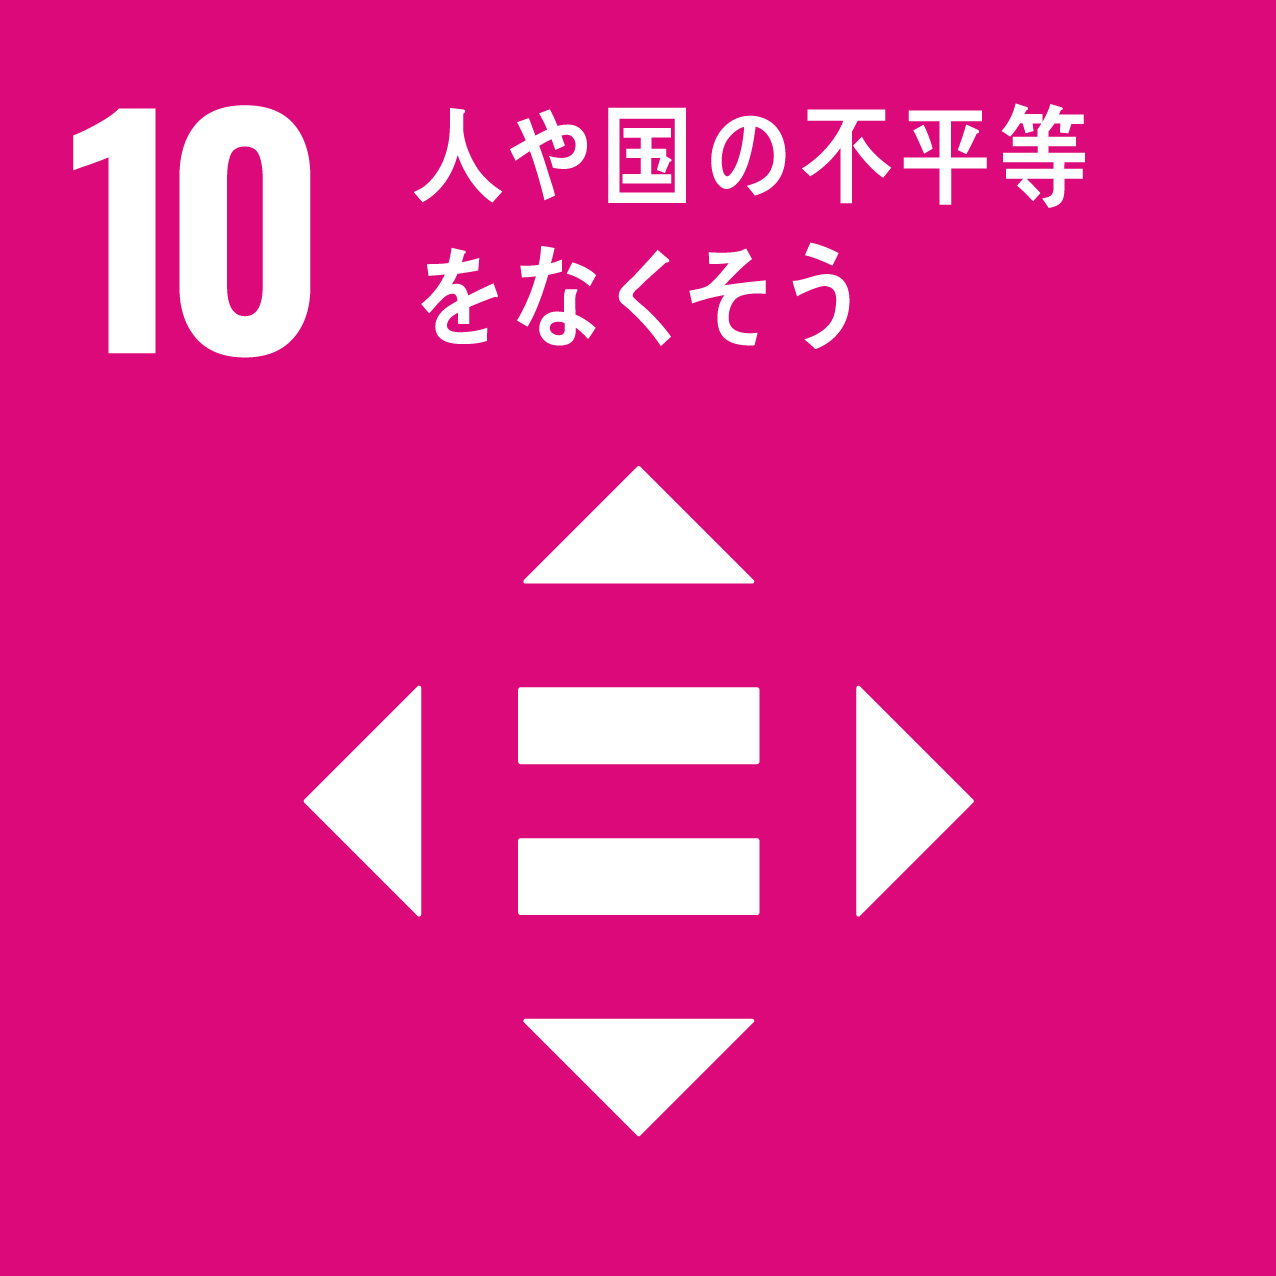 SDGs10のロゴマーク